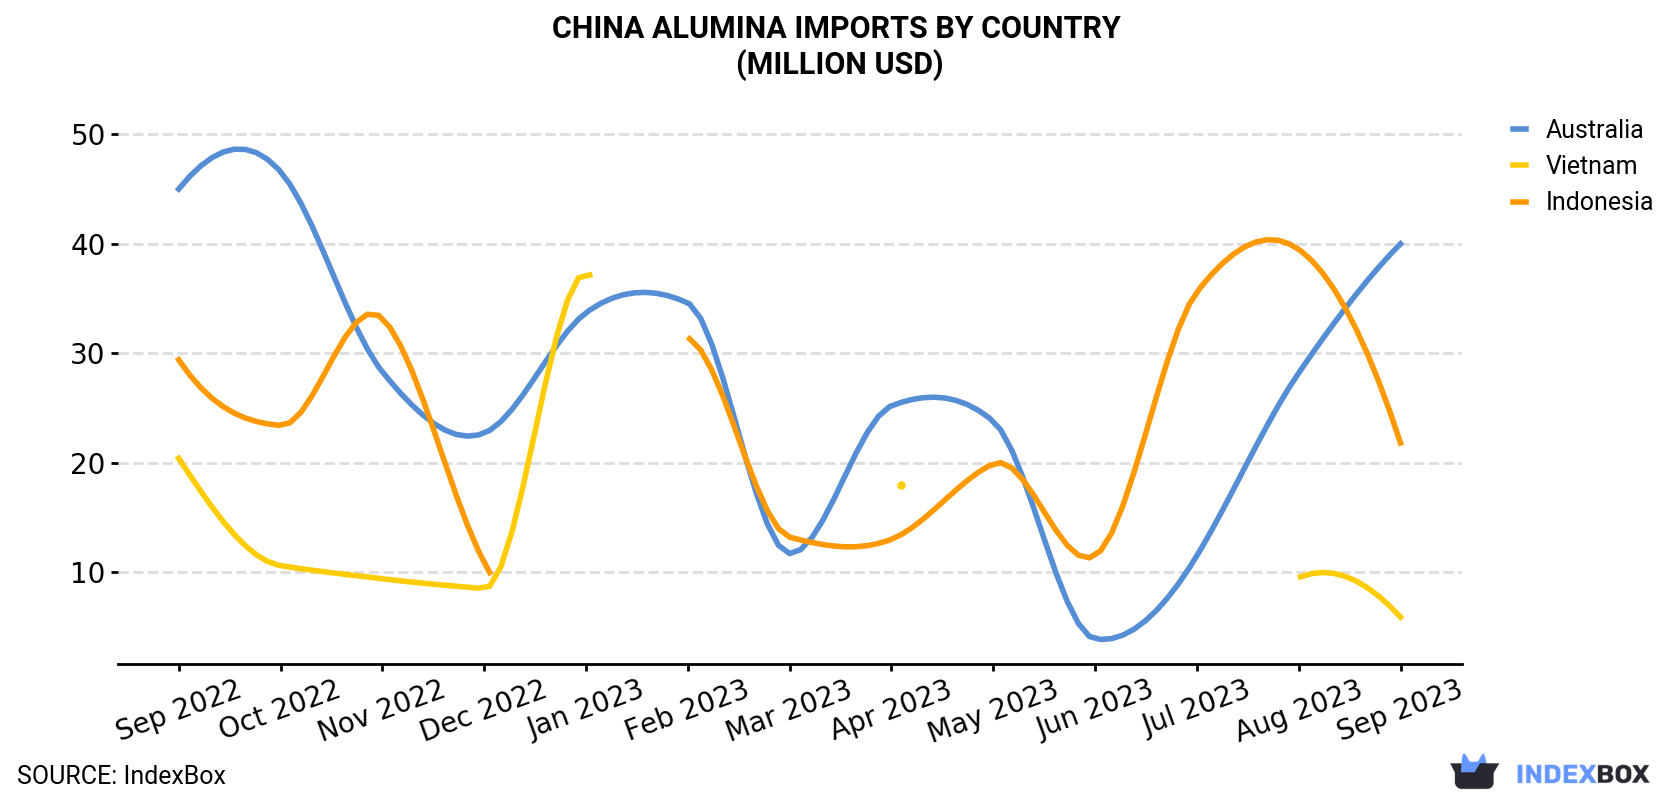 China Alumina Imports By Country (Million USD)